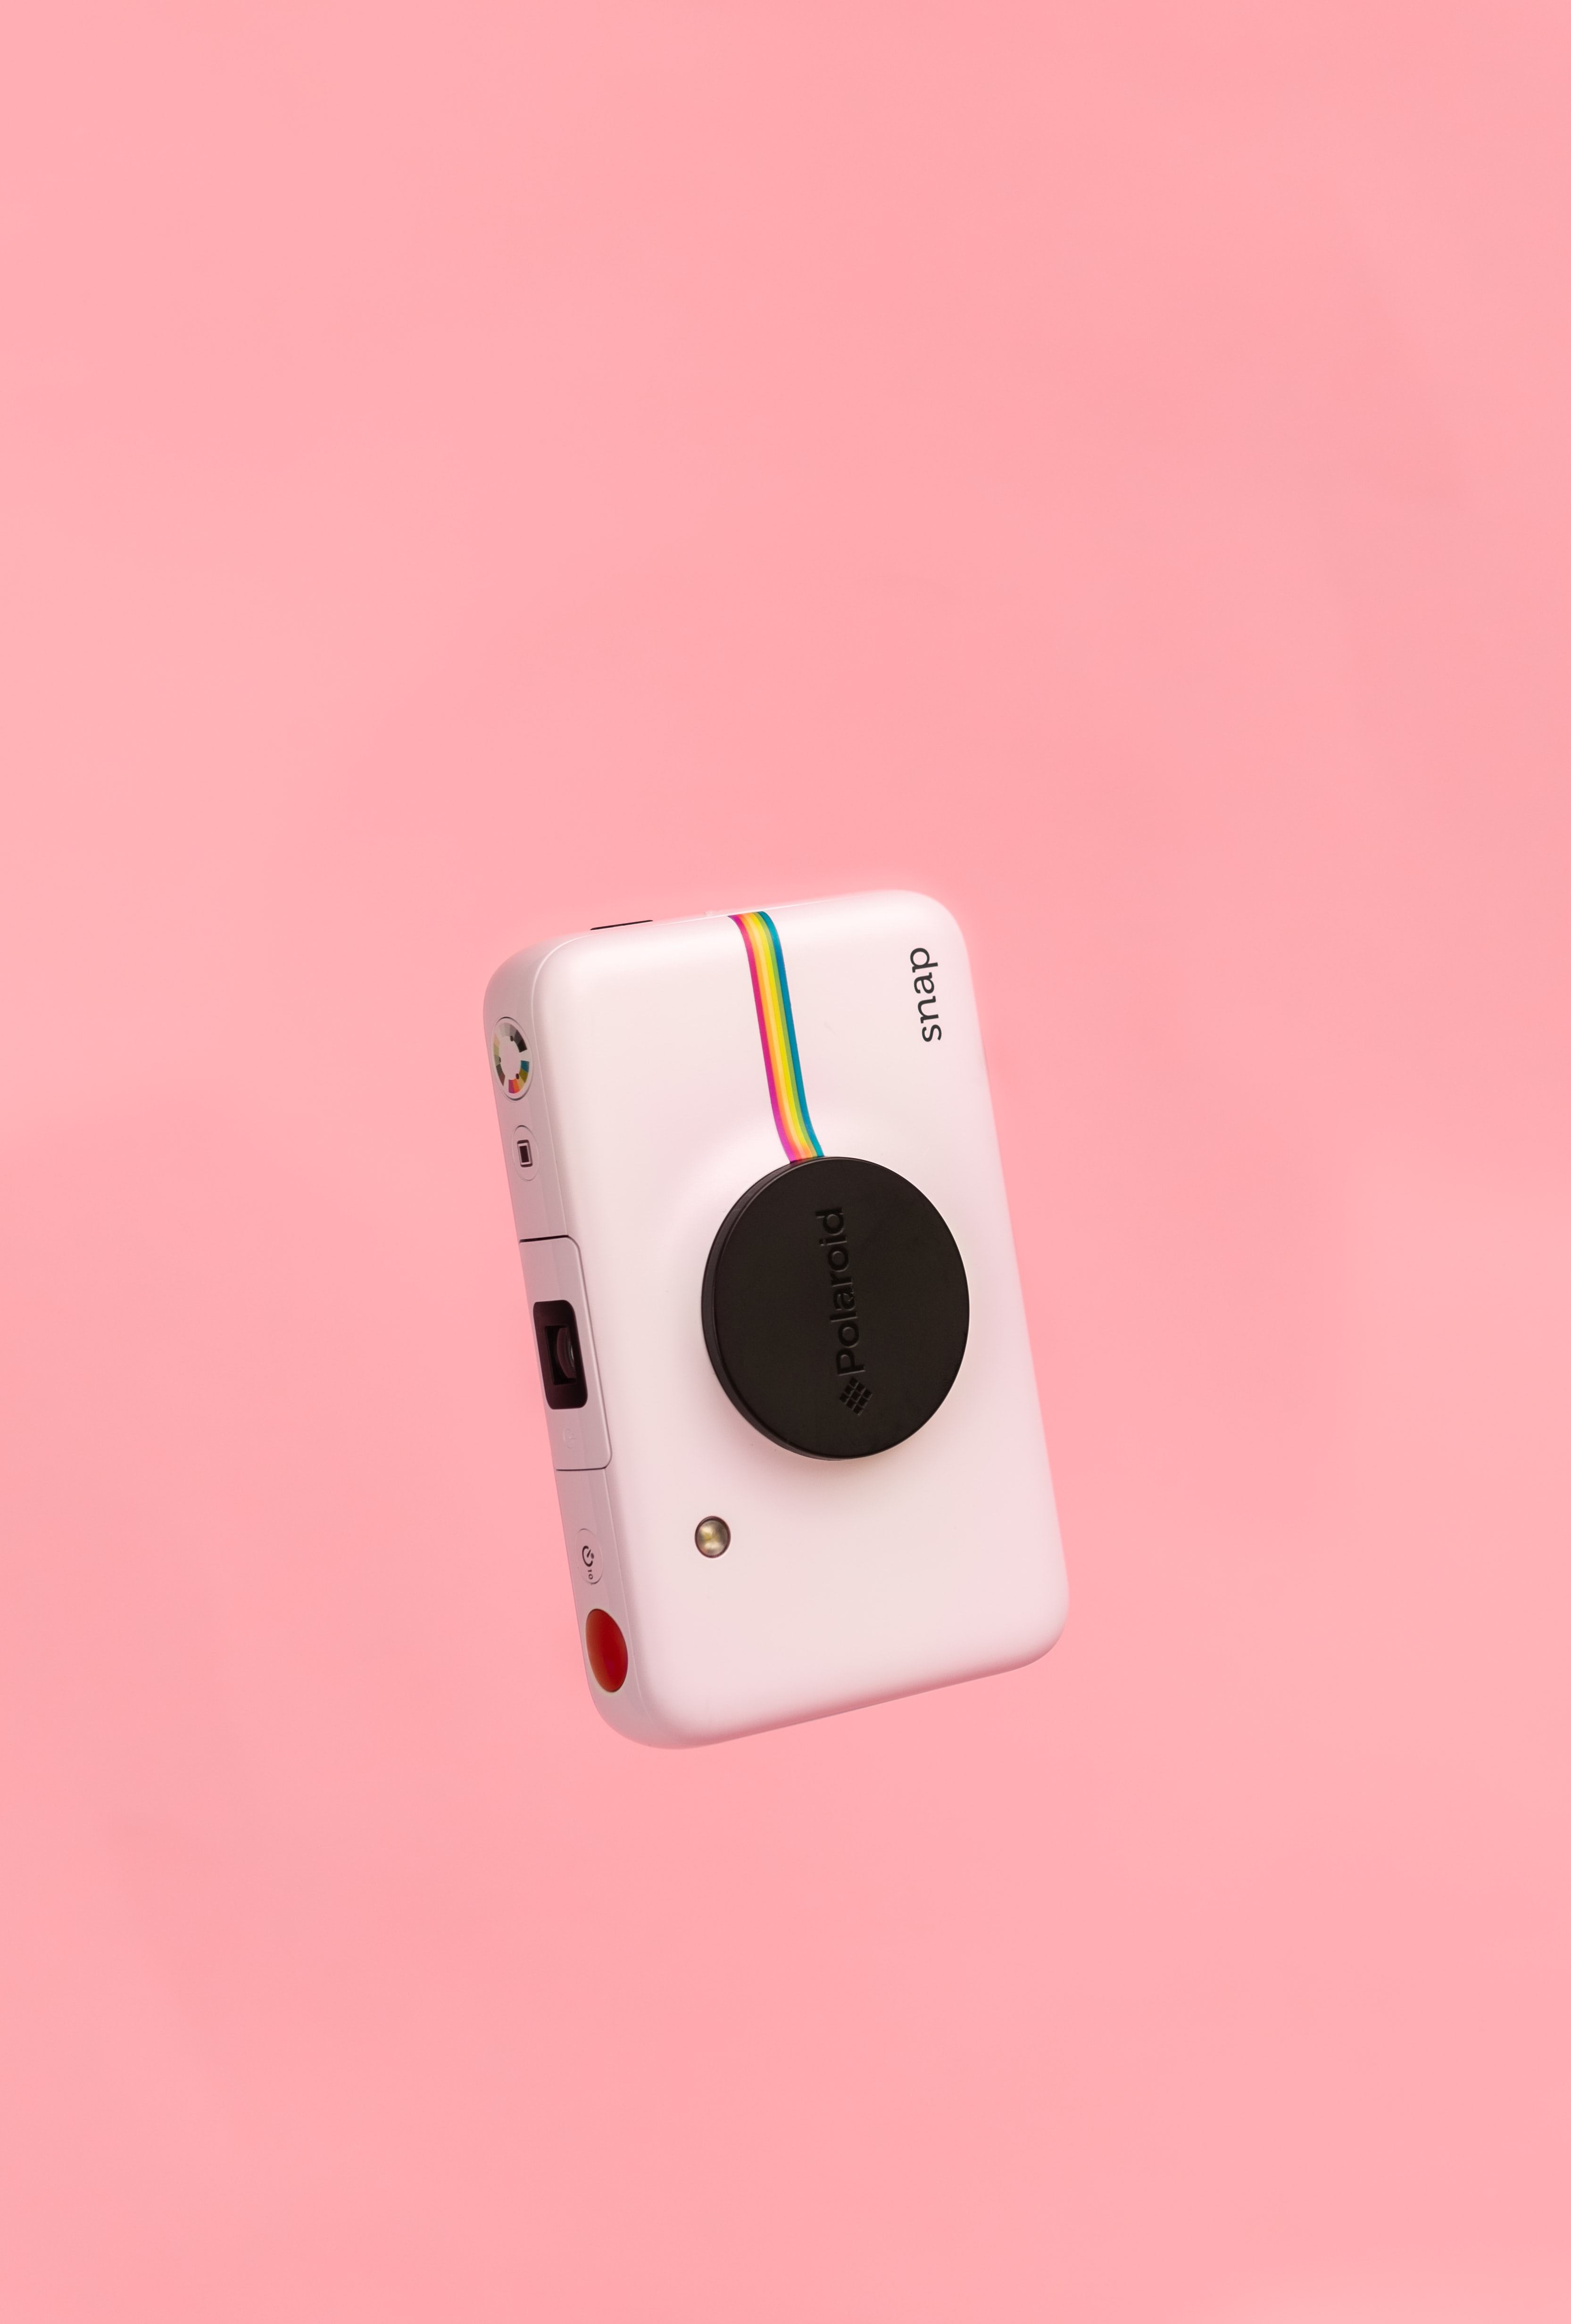 Laden Sie Polaroid HD-Desktop-Hintergründe herunter